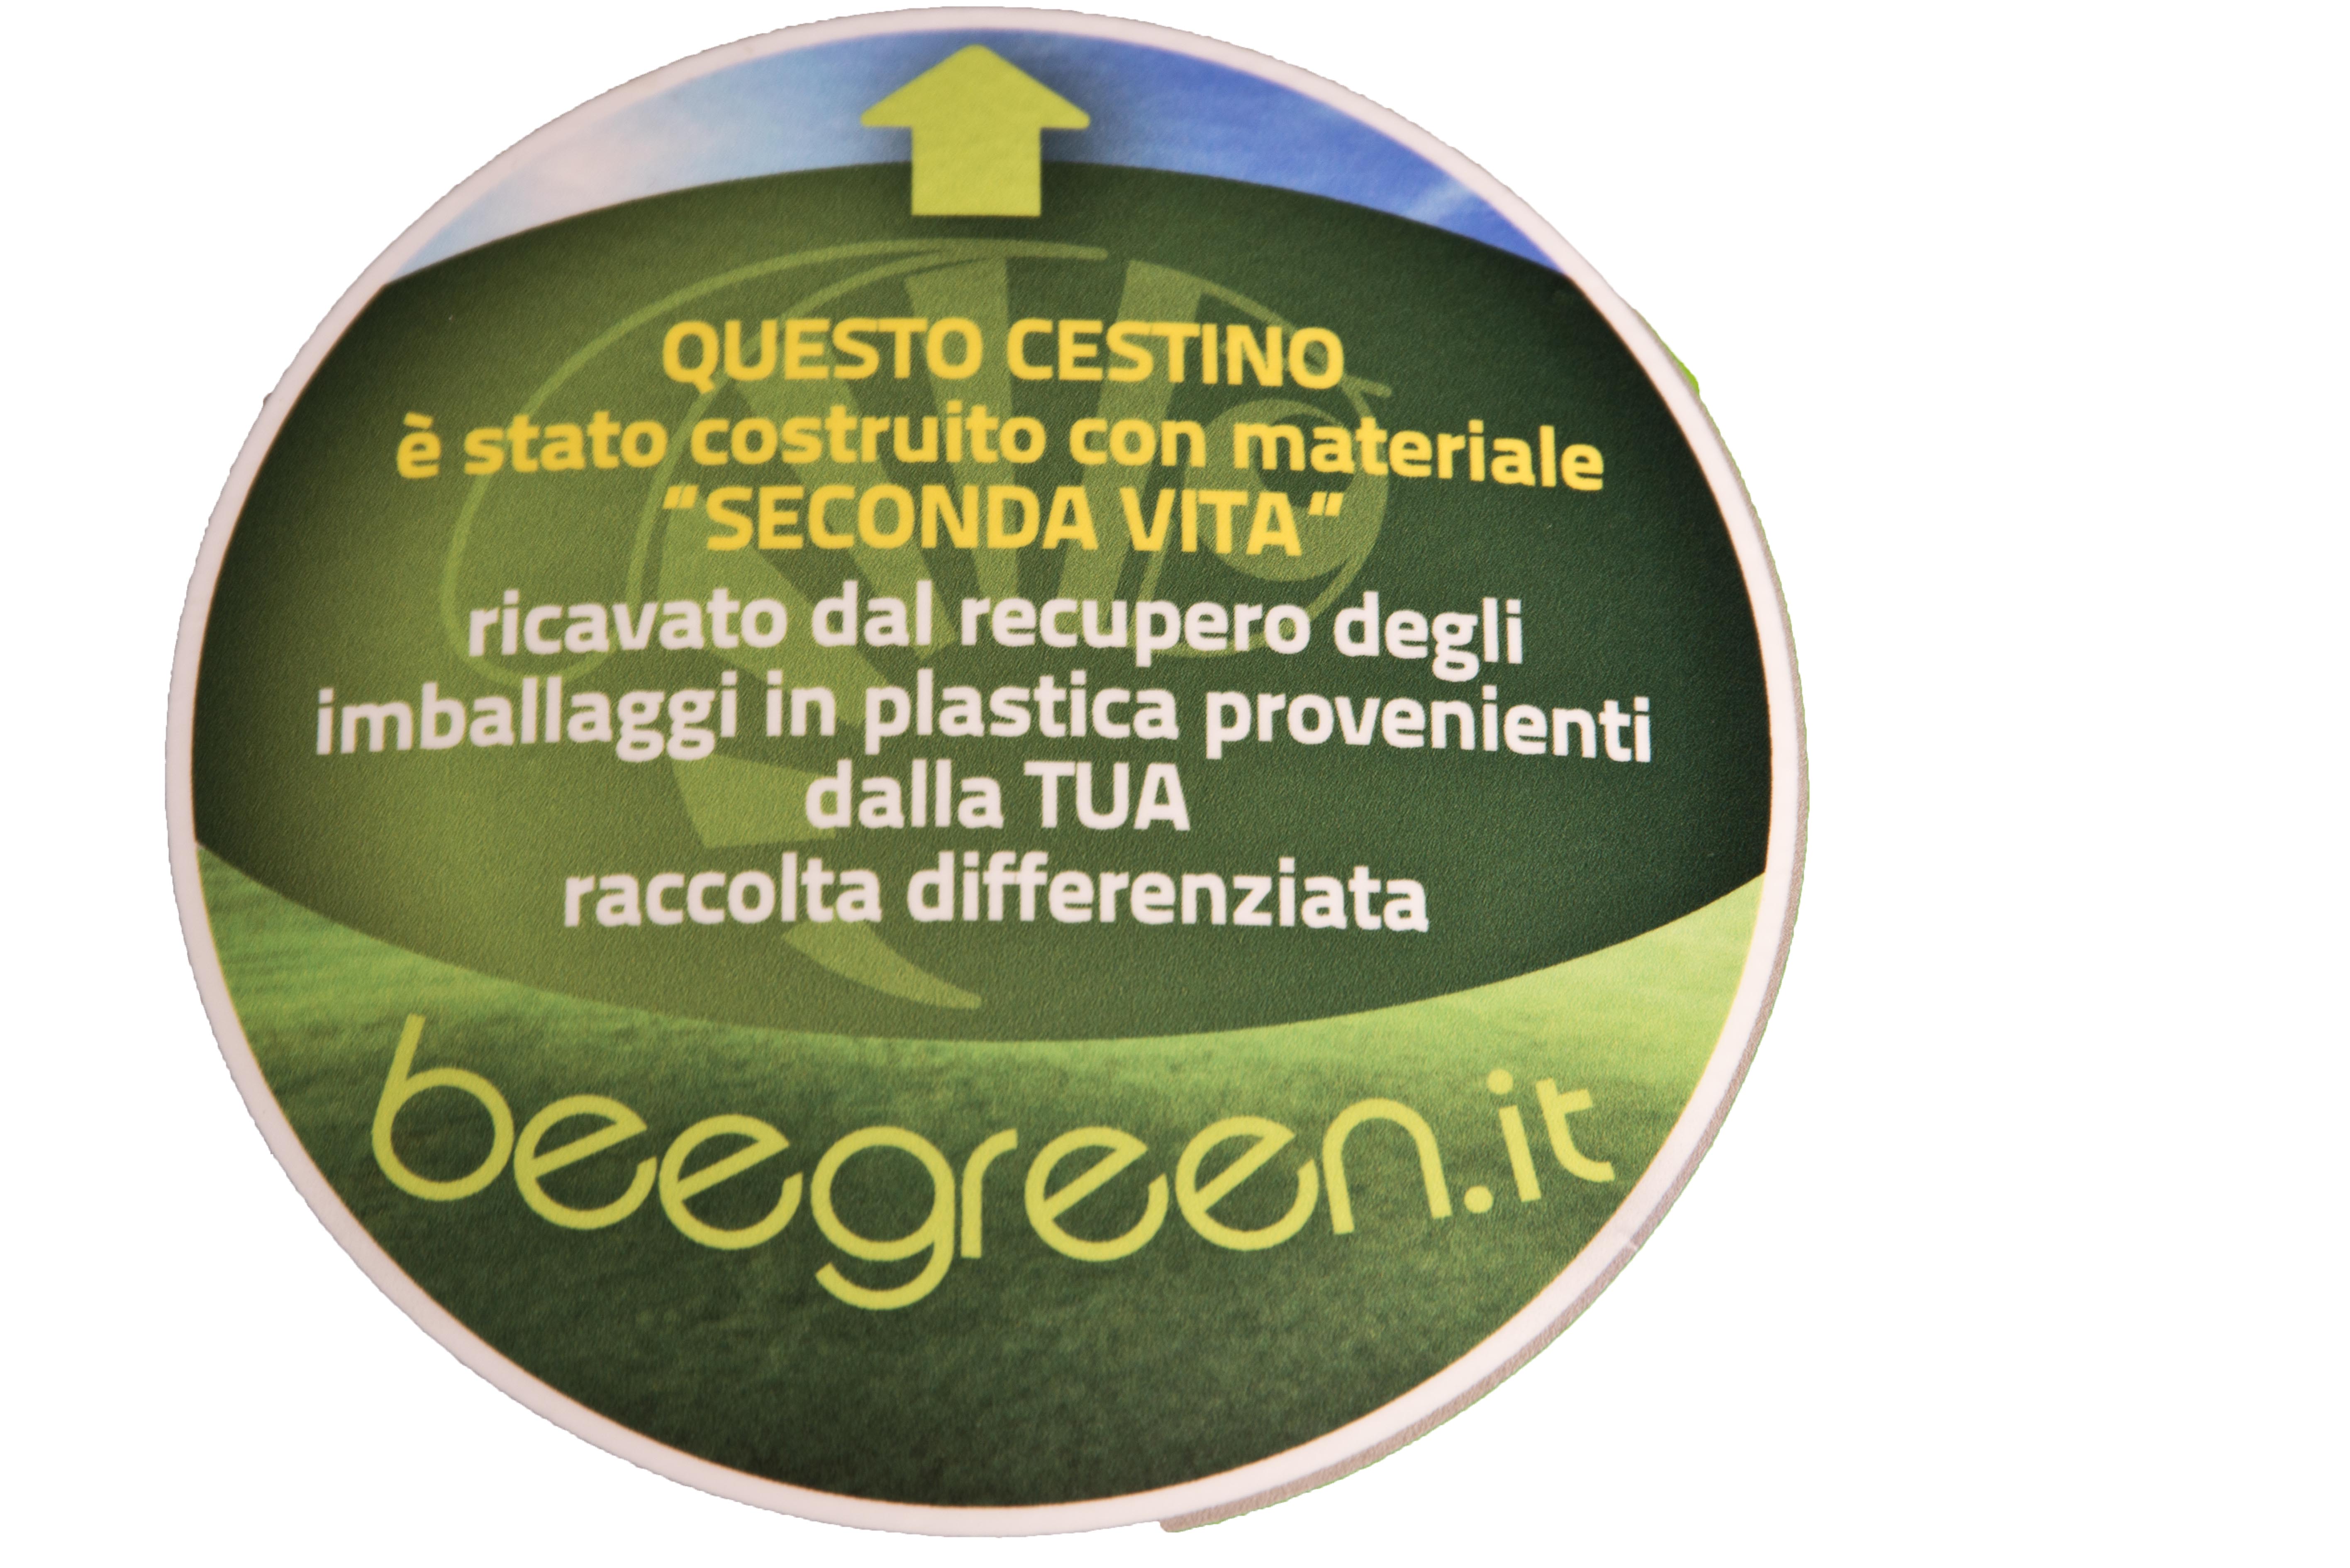 Acquisti verdi per il Comune: In arrivo cestini ricavati dal recupero degli imballaggi in plastica